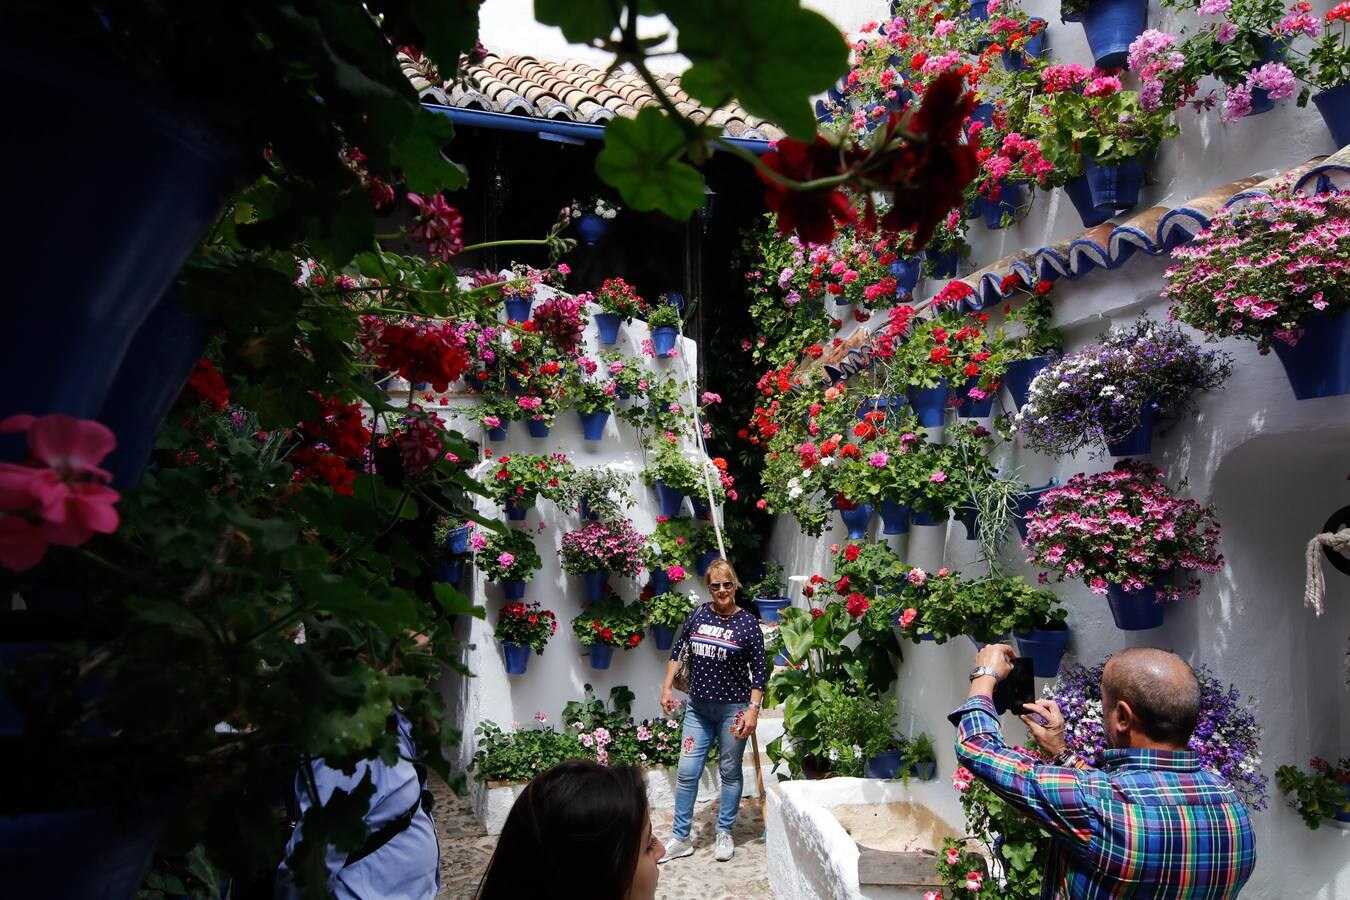 El esplendor de los patios de San Basilio-Alcázar Viejo en Córdoba, en imágenes